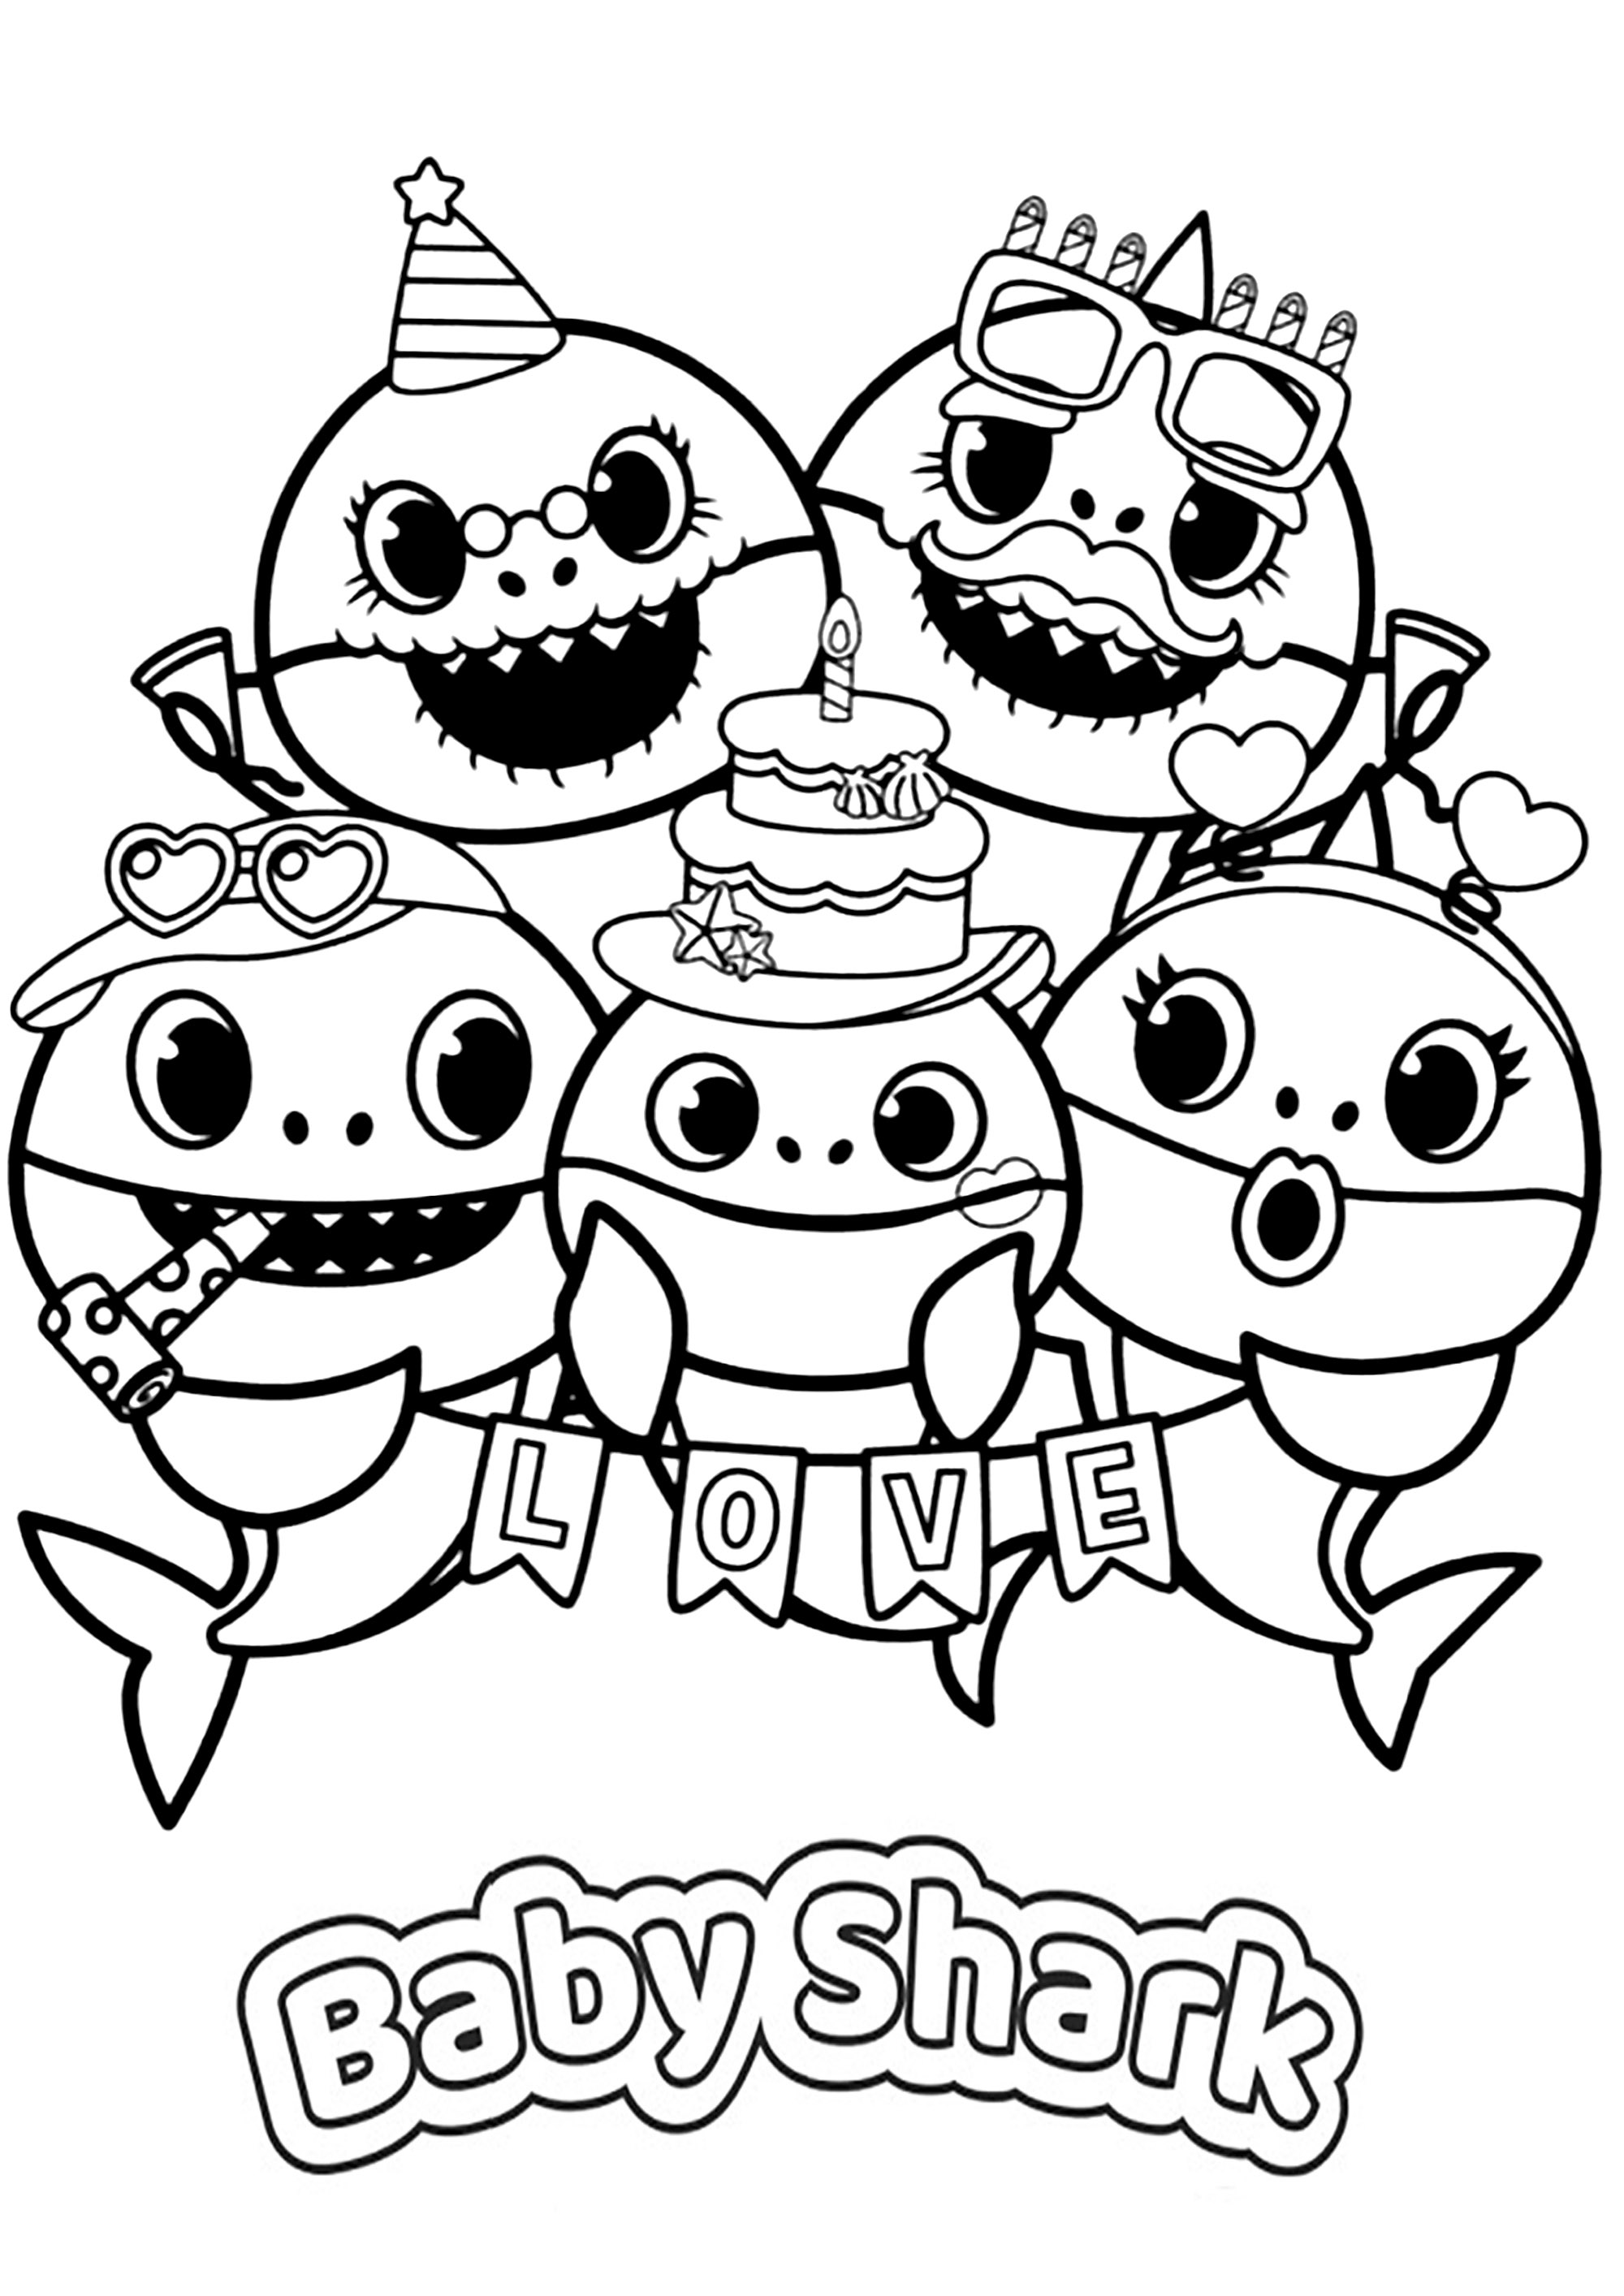 ภาพวาดระบายสีครอบครัวความสุข BABY SHARK